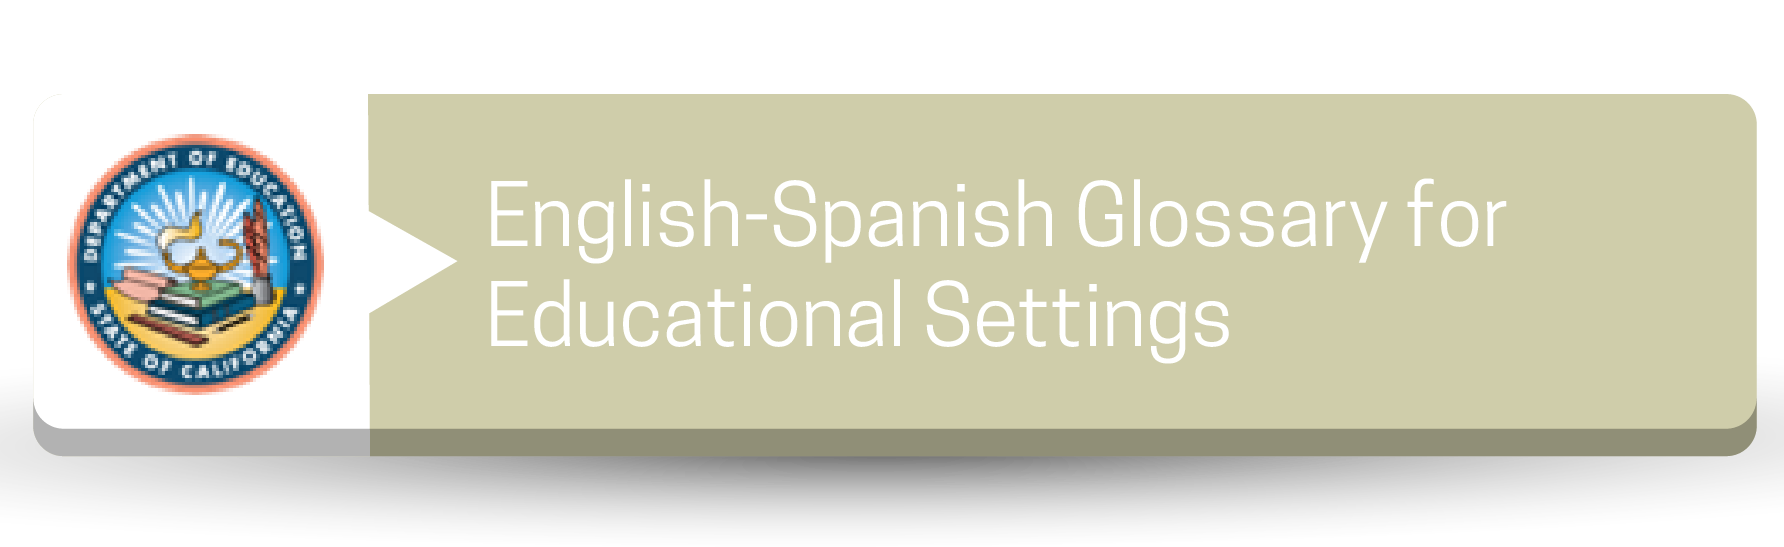 Glosario inglés-español para entornos educativos - Botón de recursos (CDE)